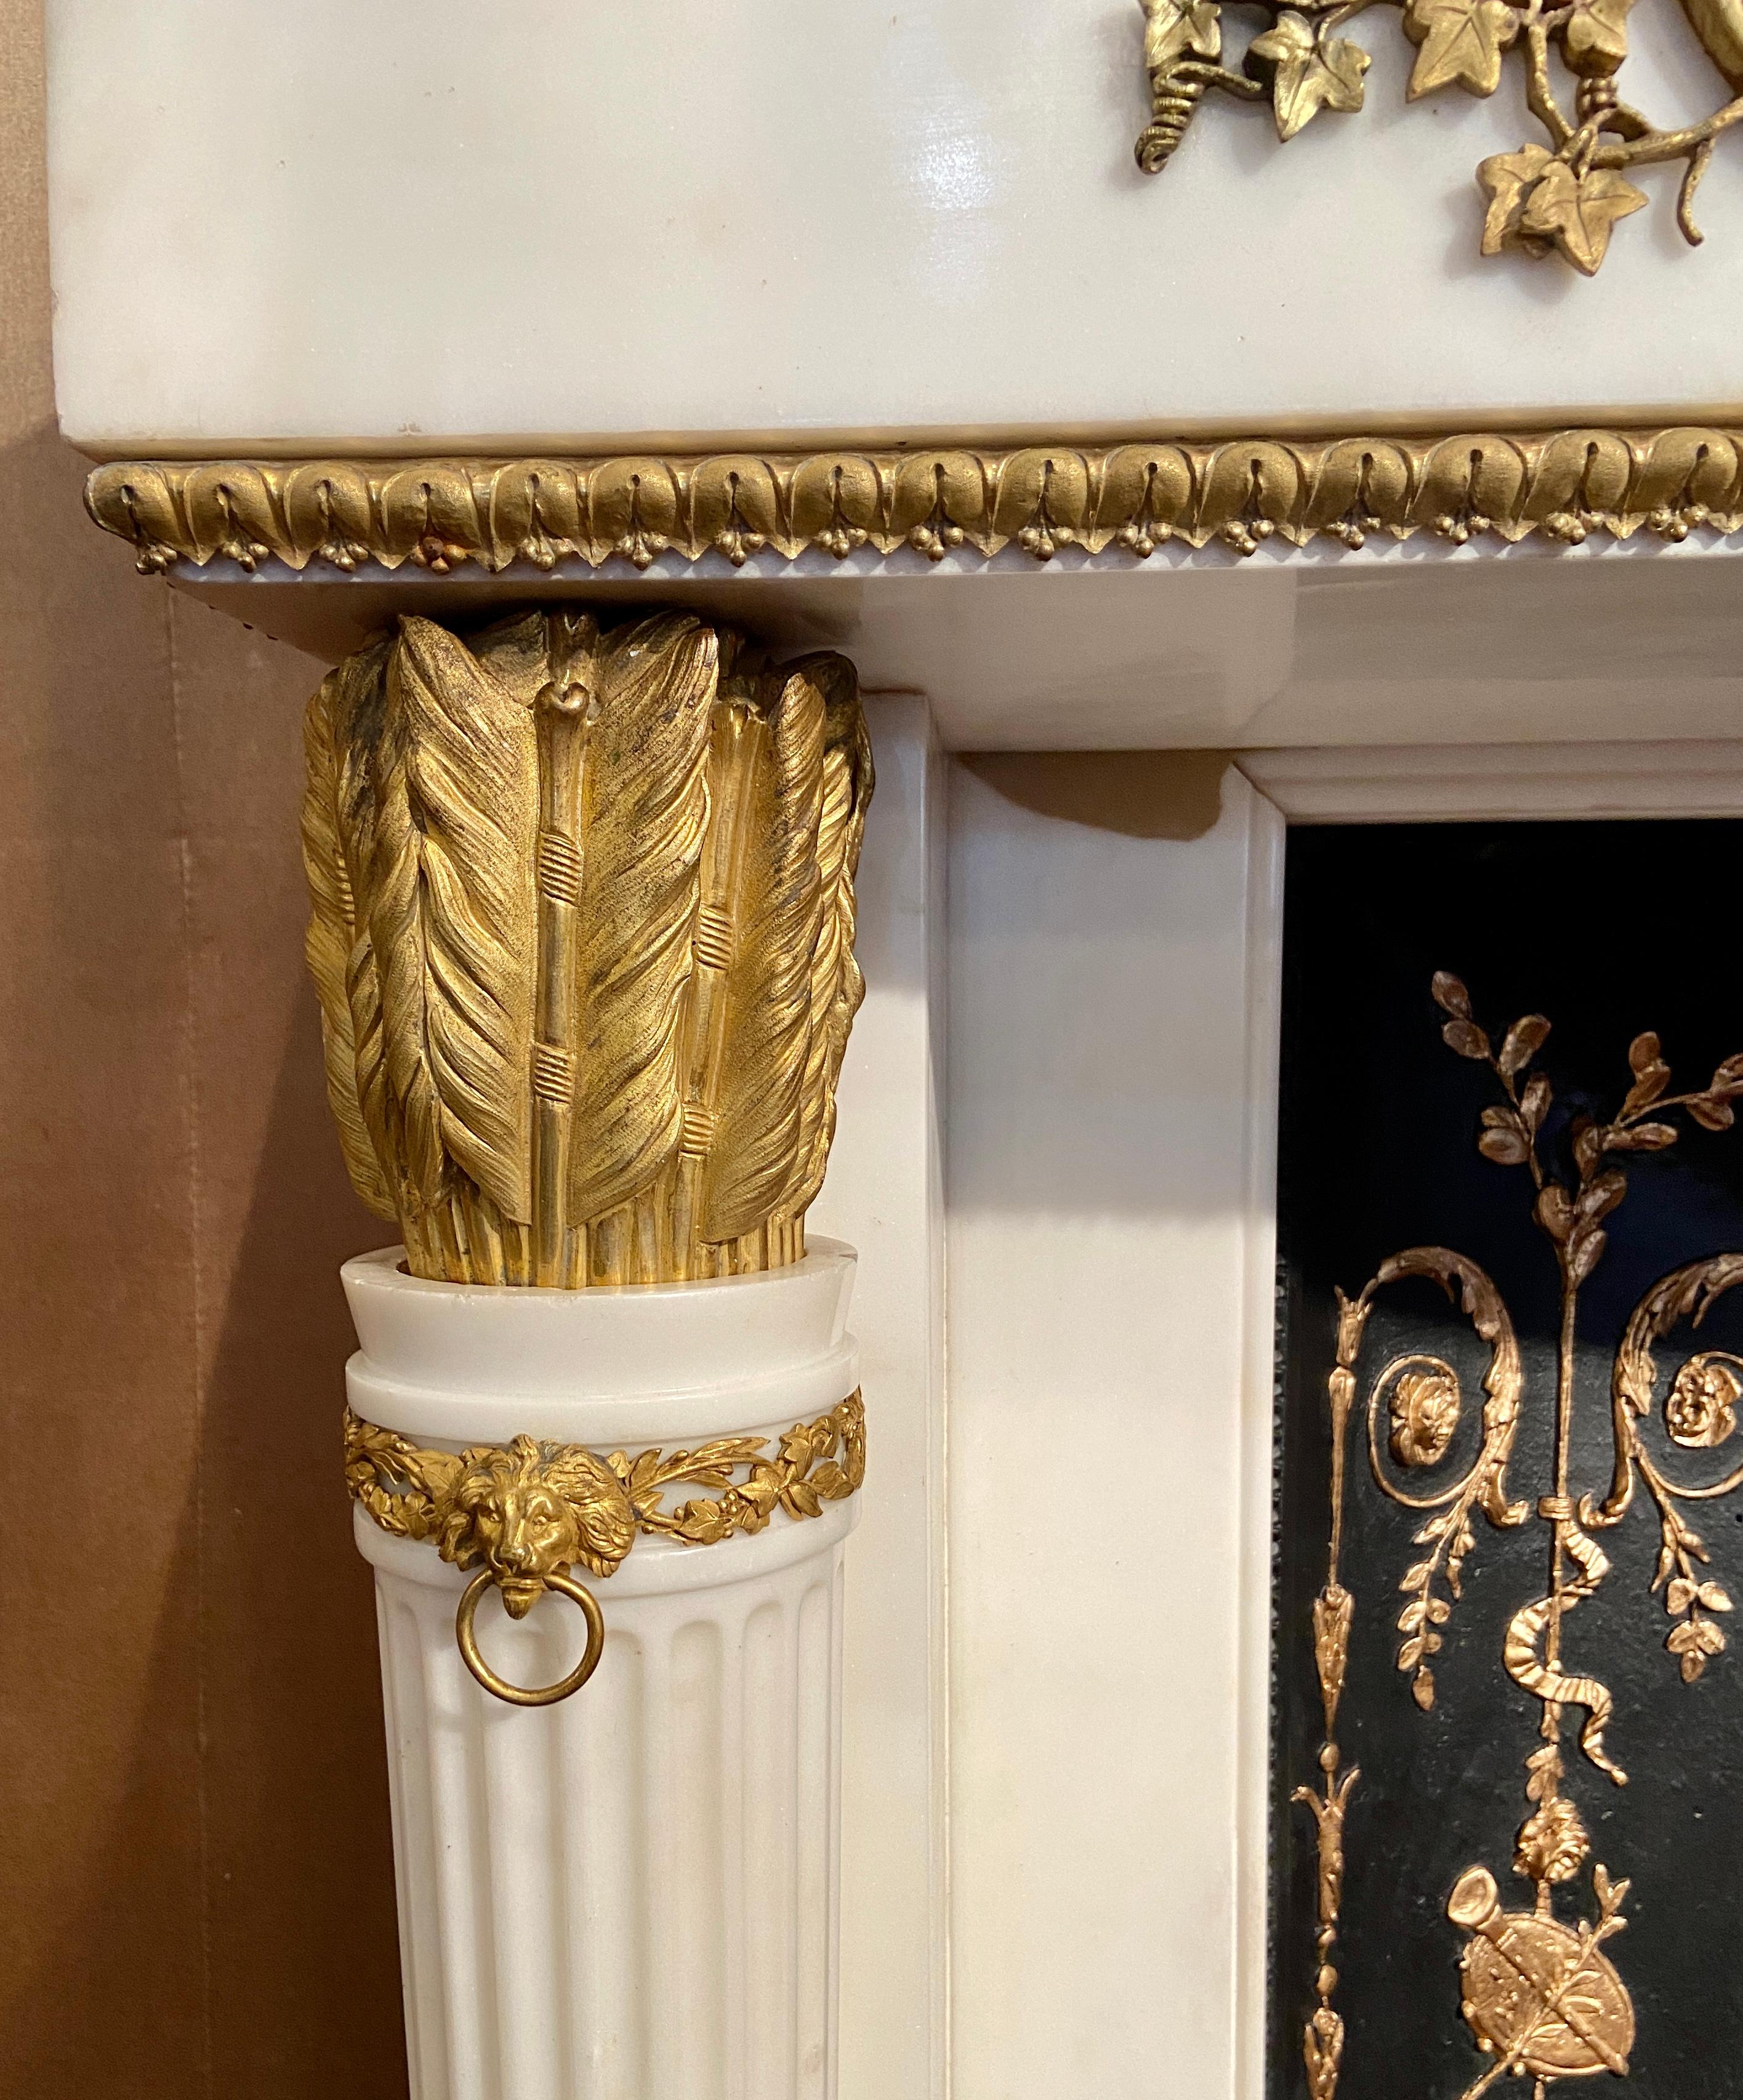 Prächtiger antiker französischer Marmorkamin im Louis-XVI-Stil des 19. Jahrhunderts mit Goldbronze-Montierung nach dem Kamin in Marie Antoinettes Silber Boudoir im Chteau de Fontainebleau, 1786.
Dieser schöne Kaminsims ist dem Original